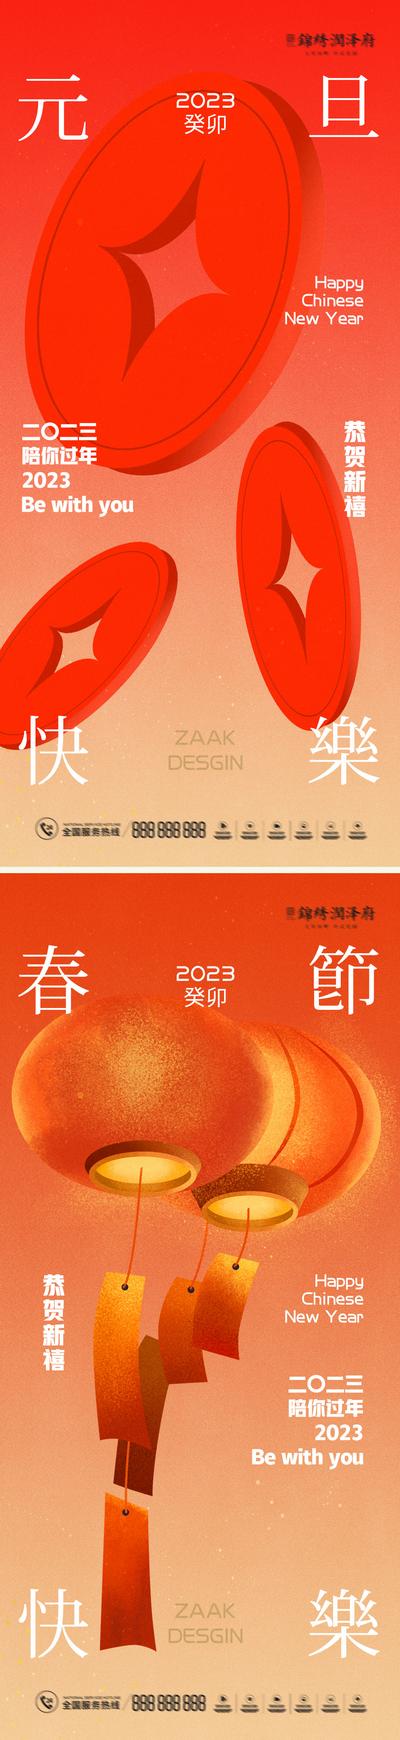 南门网 海报 房地产 中国传统节日 2023 元旦 兔年 春节 小年 喜庆 系列